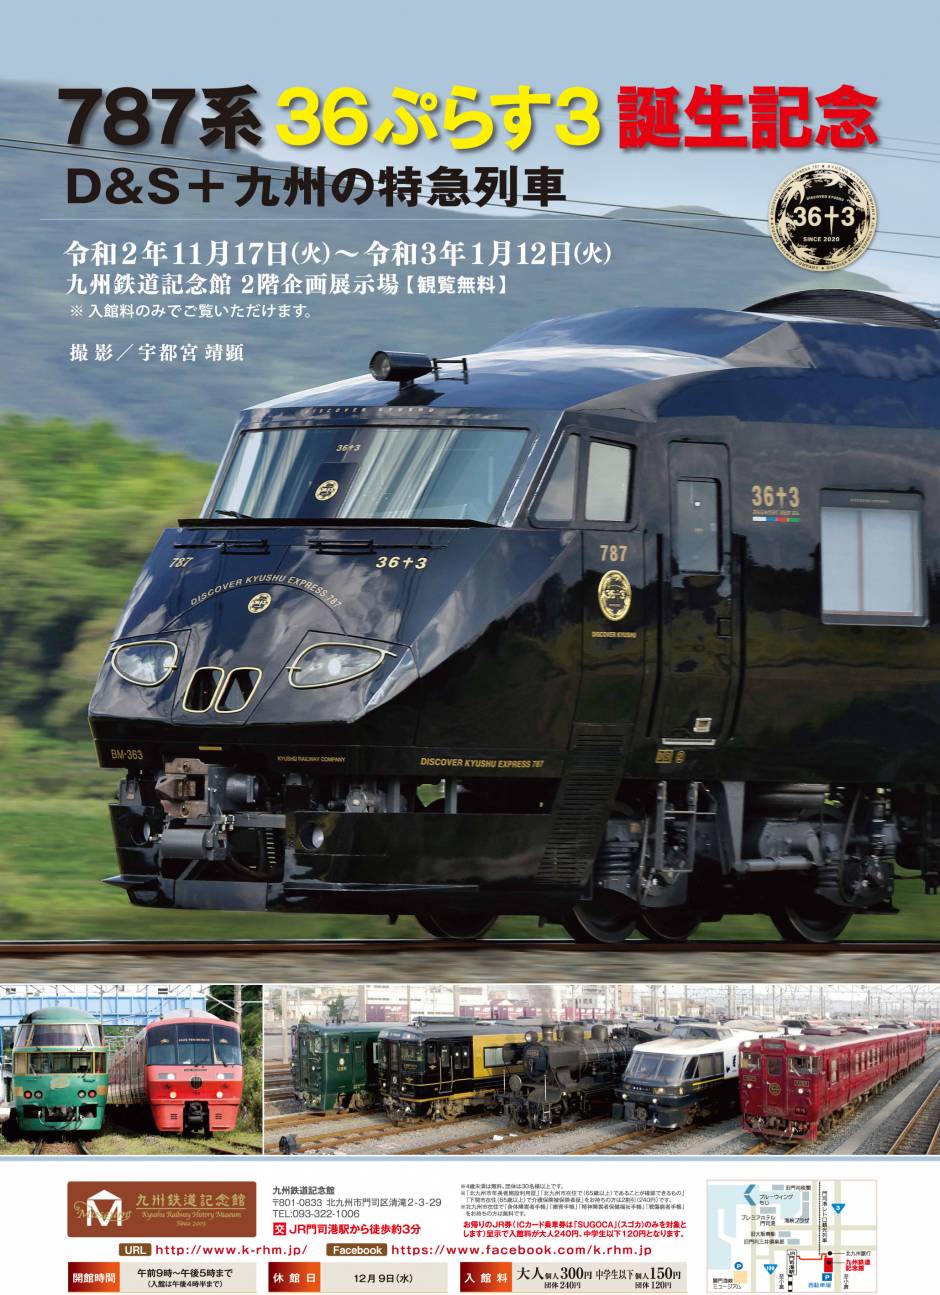 企画展「787系36ぷらす3誕生記念　Ｄ＆Ｓ 九州の特急列車」